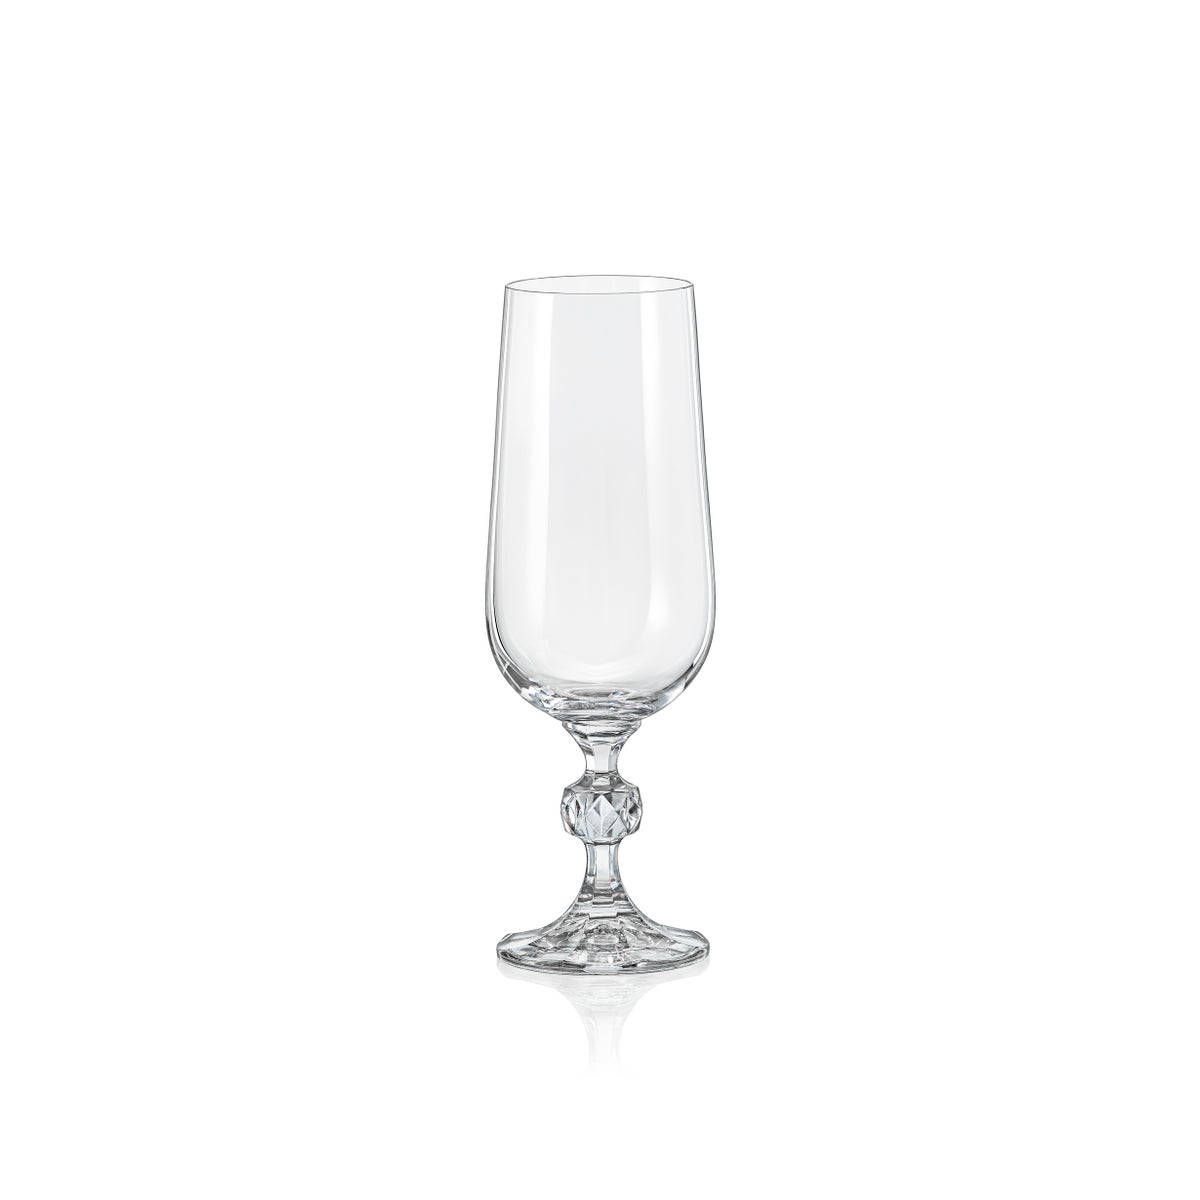 Claudia - Bohemia Champagne Glass w/Stem 6pc Set 180ml